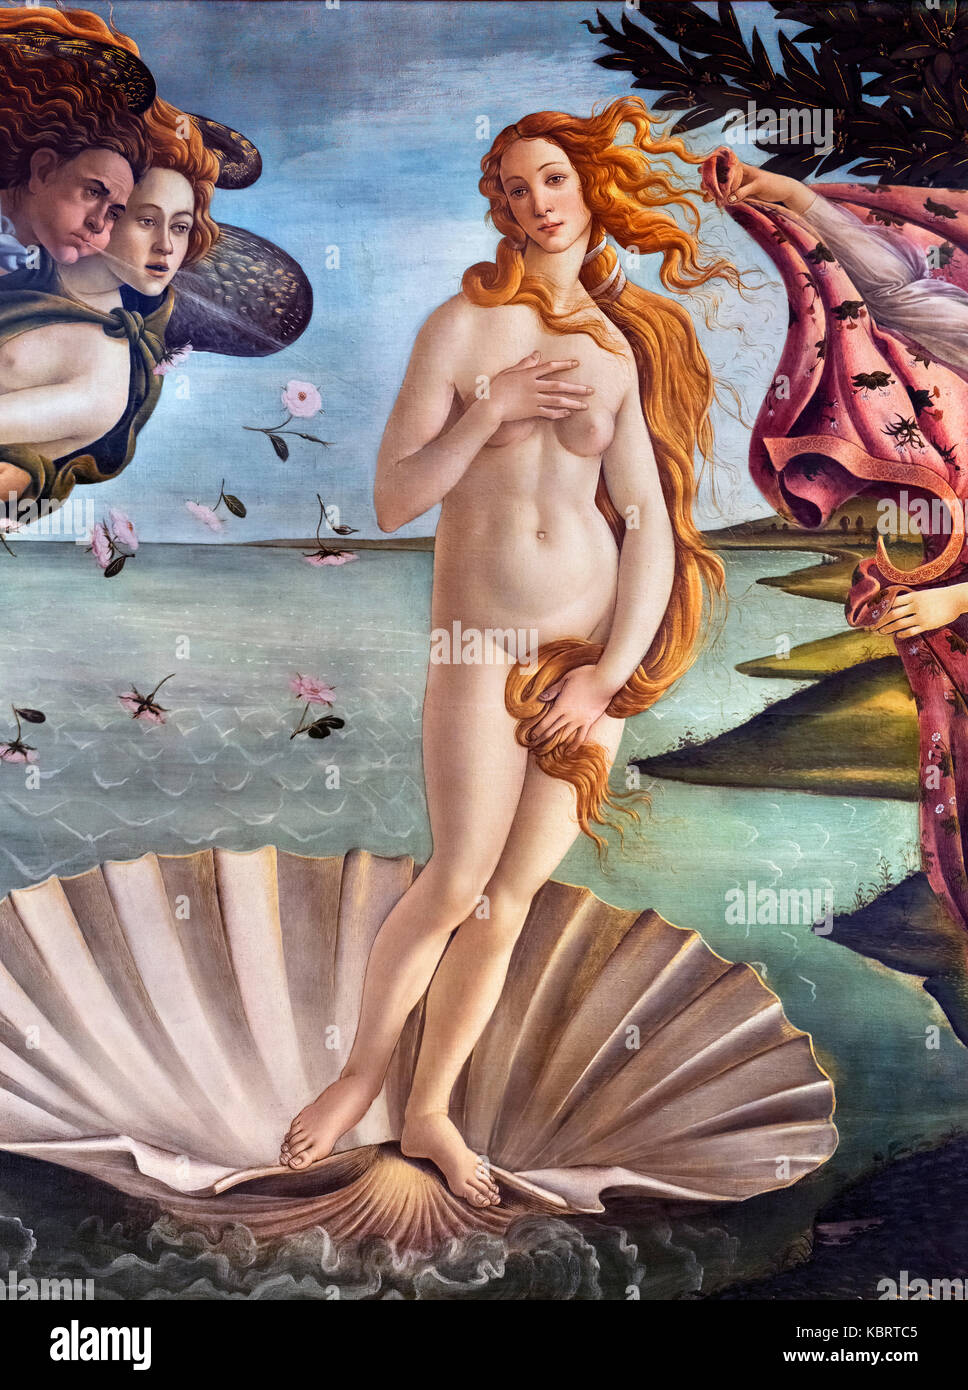 Particolare dalla nascita di Venere dell'artista rinascimentale, Sandro Botticelli (Alessandro di Mariano di Vanni Filipepi, ca. 1445-1510) tempera su tela, ca. 1487 Foto Stock